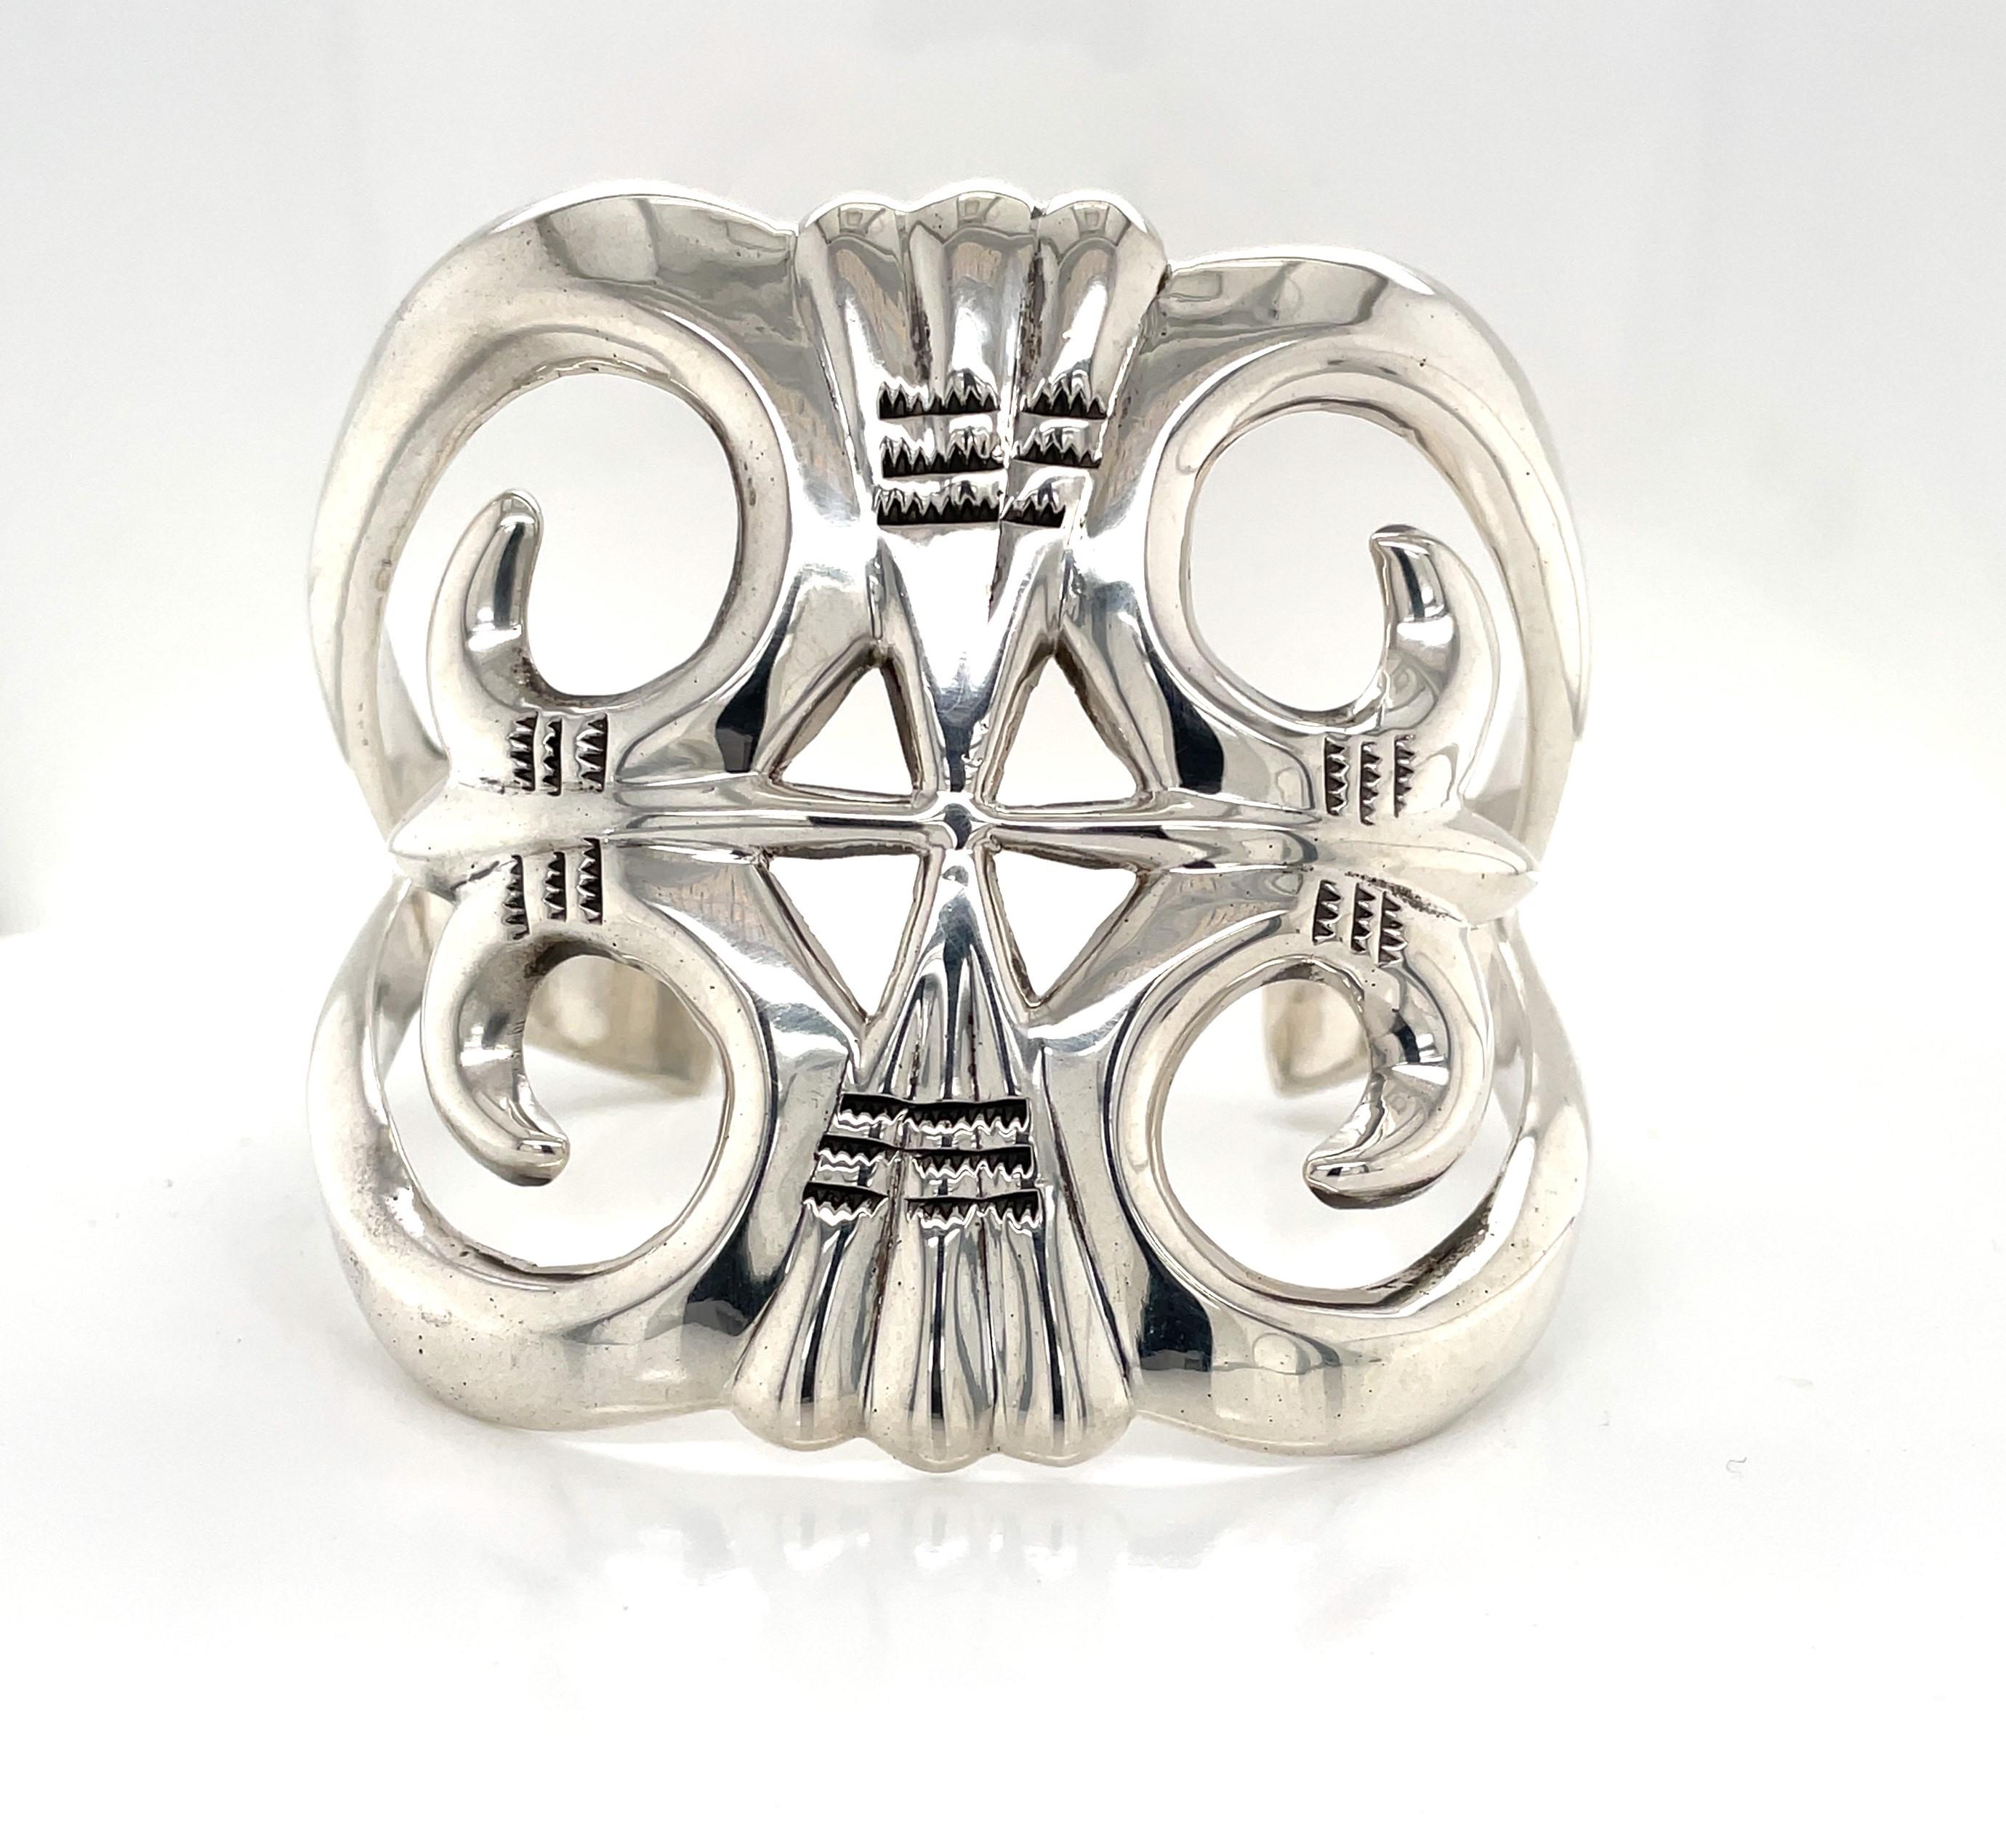 Kühn im Design und von beträchtlichem Gewicht in .900 Silber gefertigt, zeigt dieses fein gearbeitete Manschettenarmband ein attraktives aztekisches Design mit einer großzügigen Breite von 2-3/8 Zoll. Dieses große Statement-Armband misst 2-3/8 Zoll